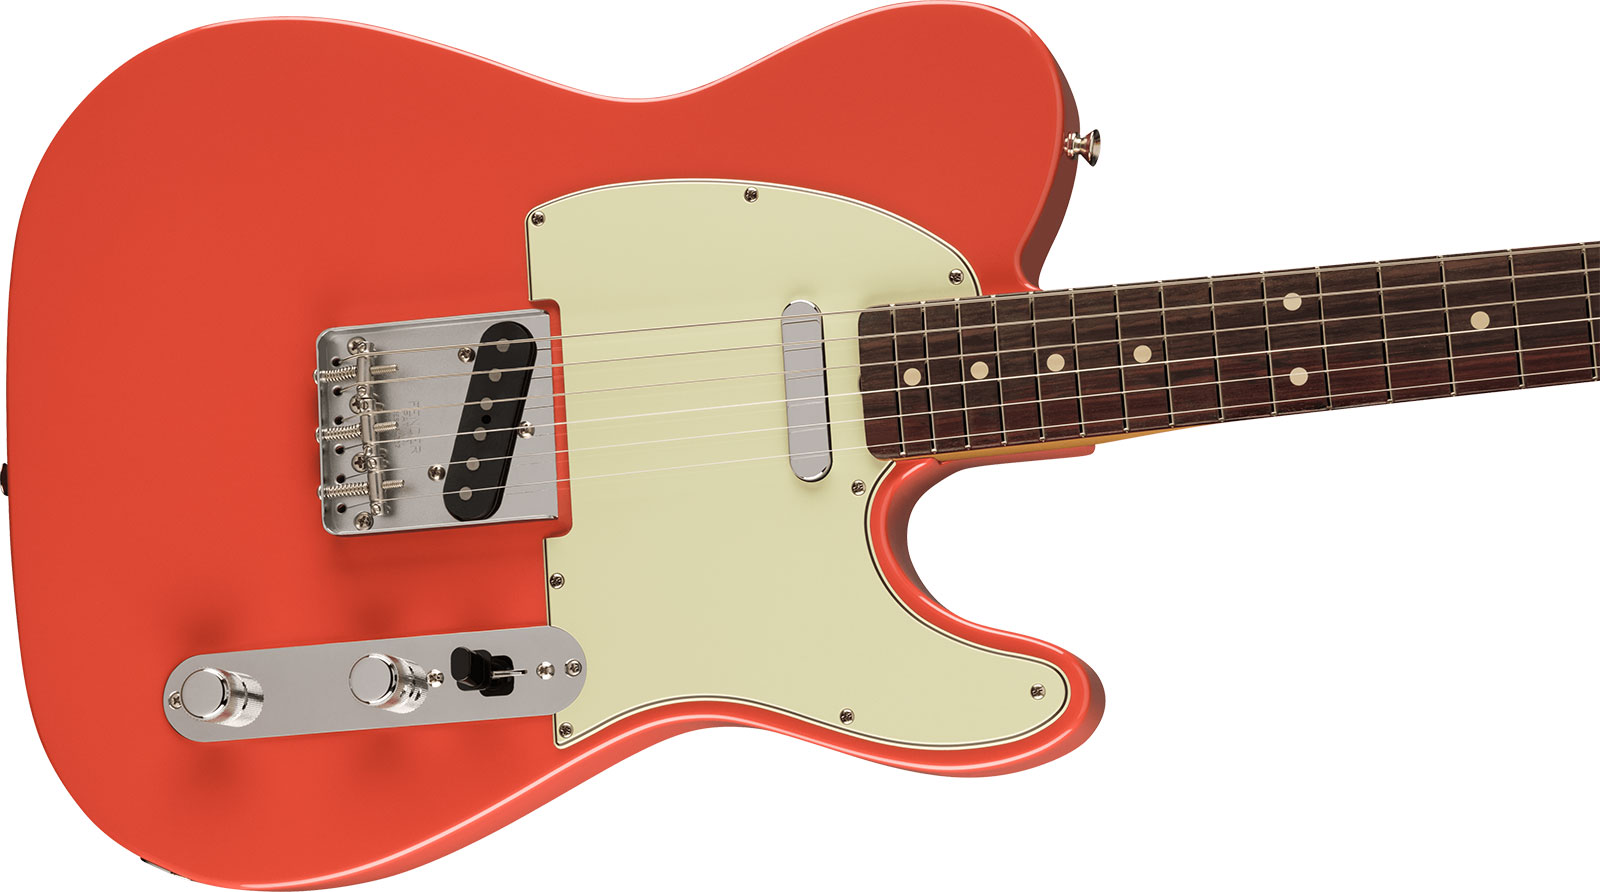 Fender Tele 60s Vintera 2 Mex 2s Ht Rw - Fiesta Red - Guitarra eléctrica con forma de tel - Variation 2